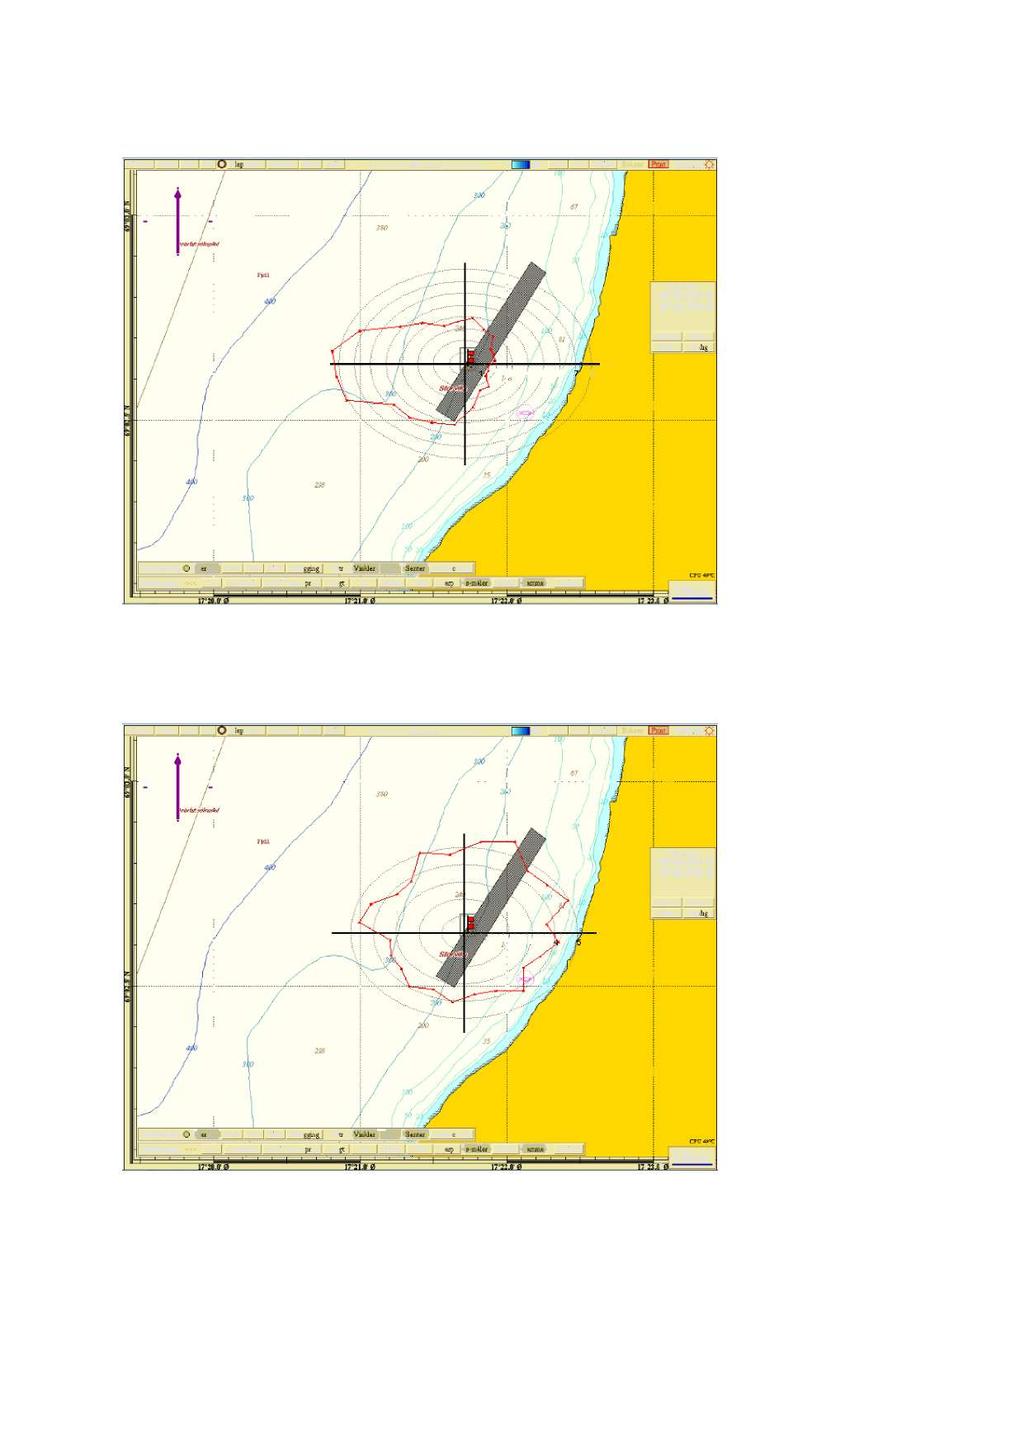 Kart nr 3: Hovedstrømsretning på 77 m dyp. Strømrosen viser andel vanngjennomstrømming i % for hver sektor på 15 grader.